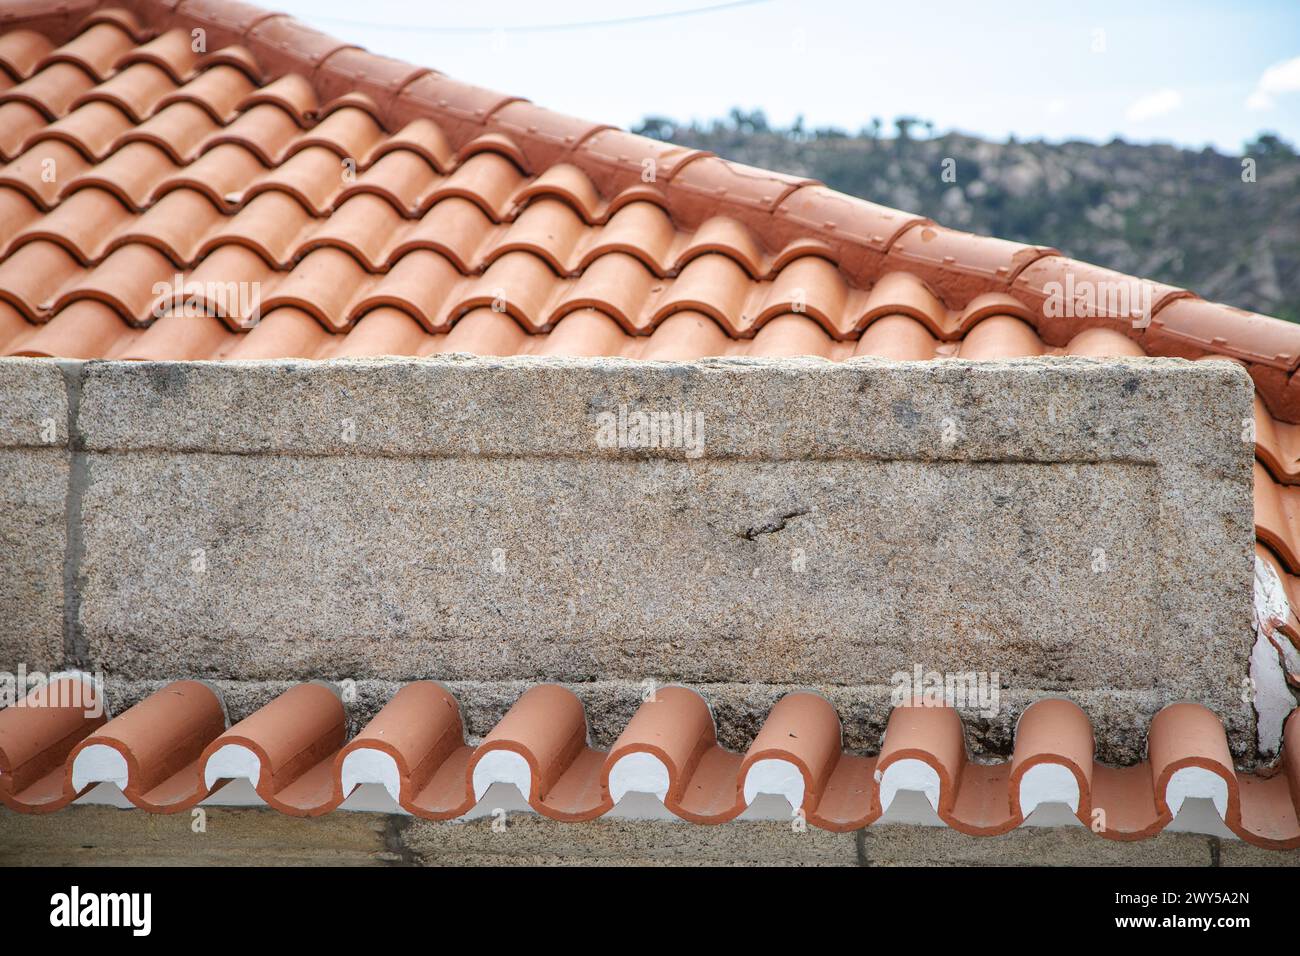 Piastrelle arancioni allineate su un tetto con dettagli in pietra. Copia spazio Foto Stock